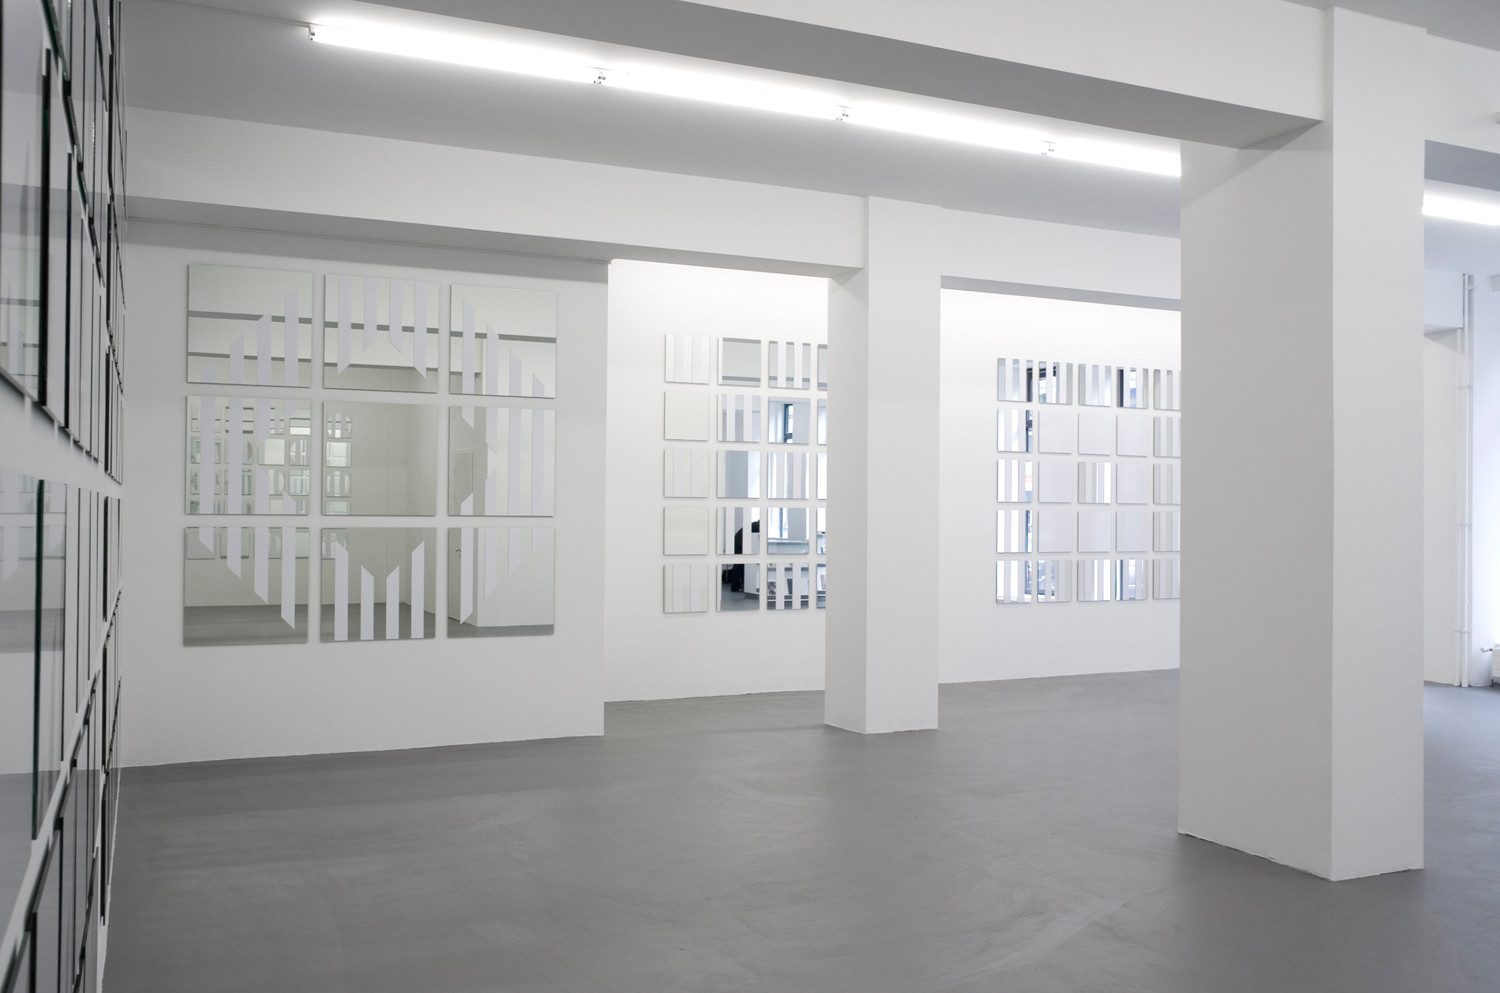 Daniel Buren, ‘voir se voir savoir’, Installation view, Buchmann Galerie, 2005